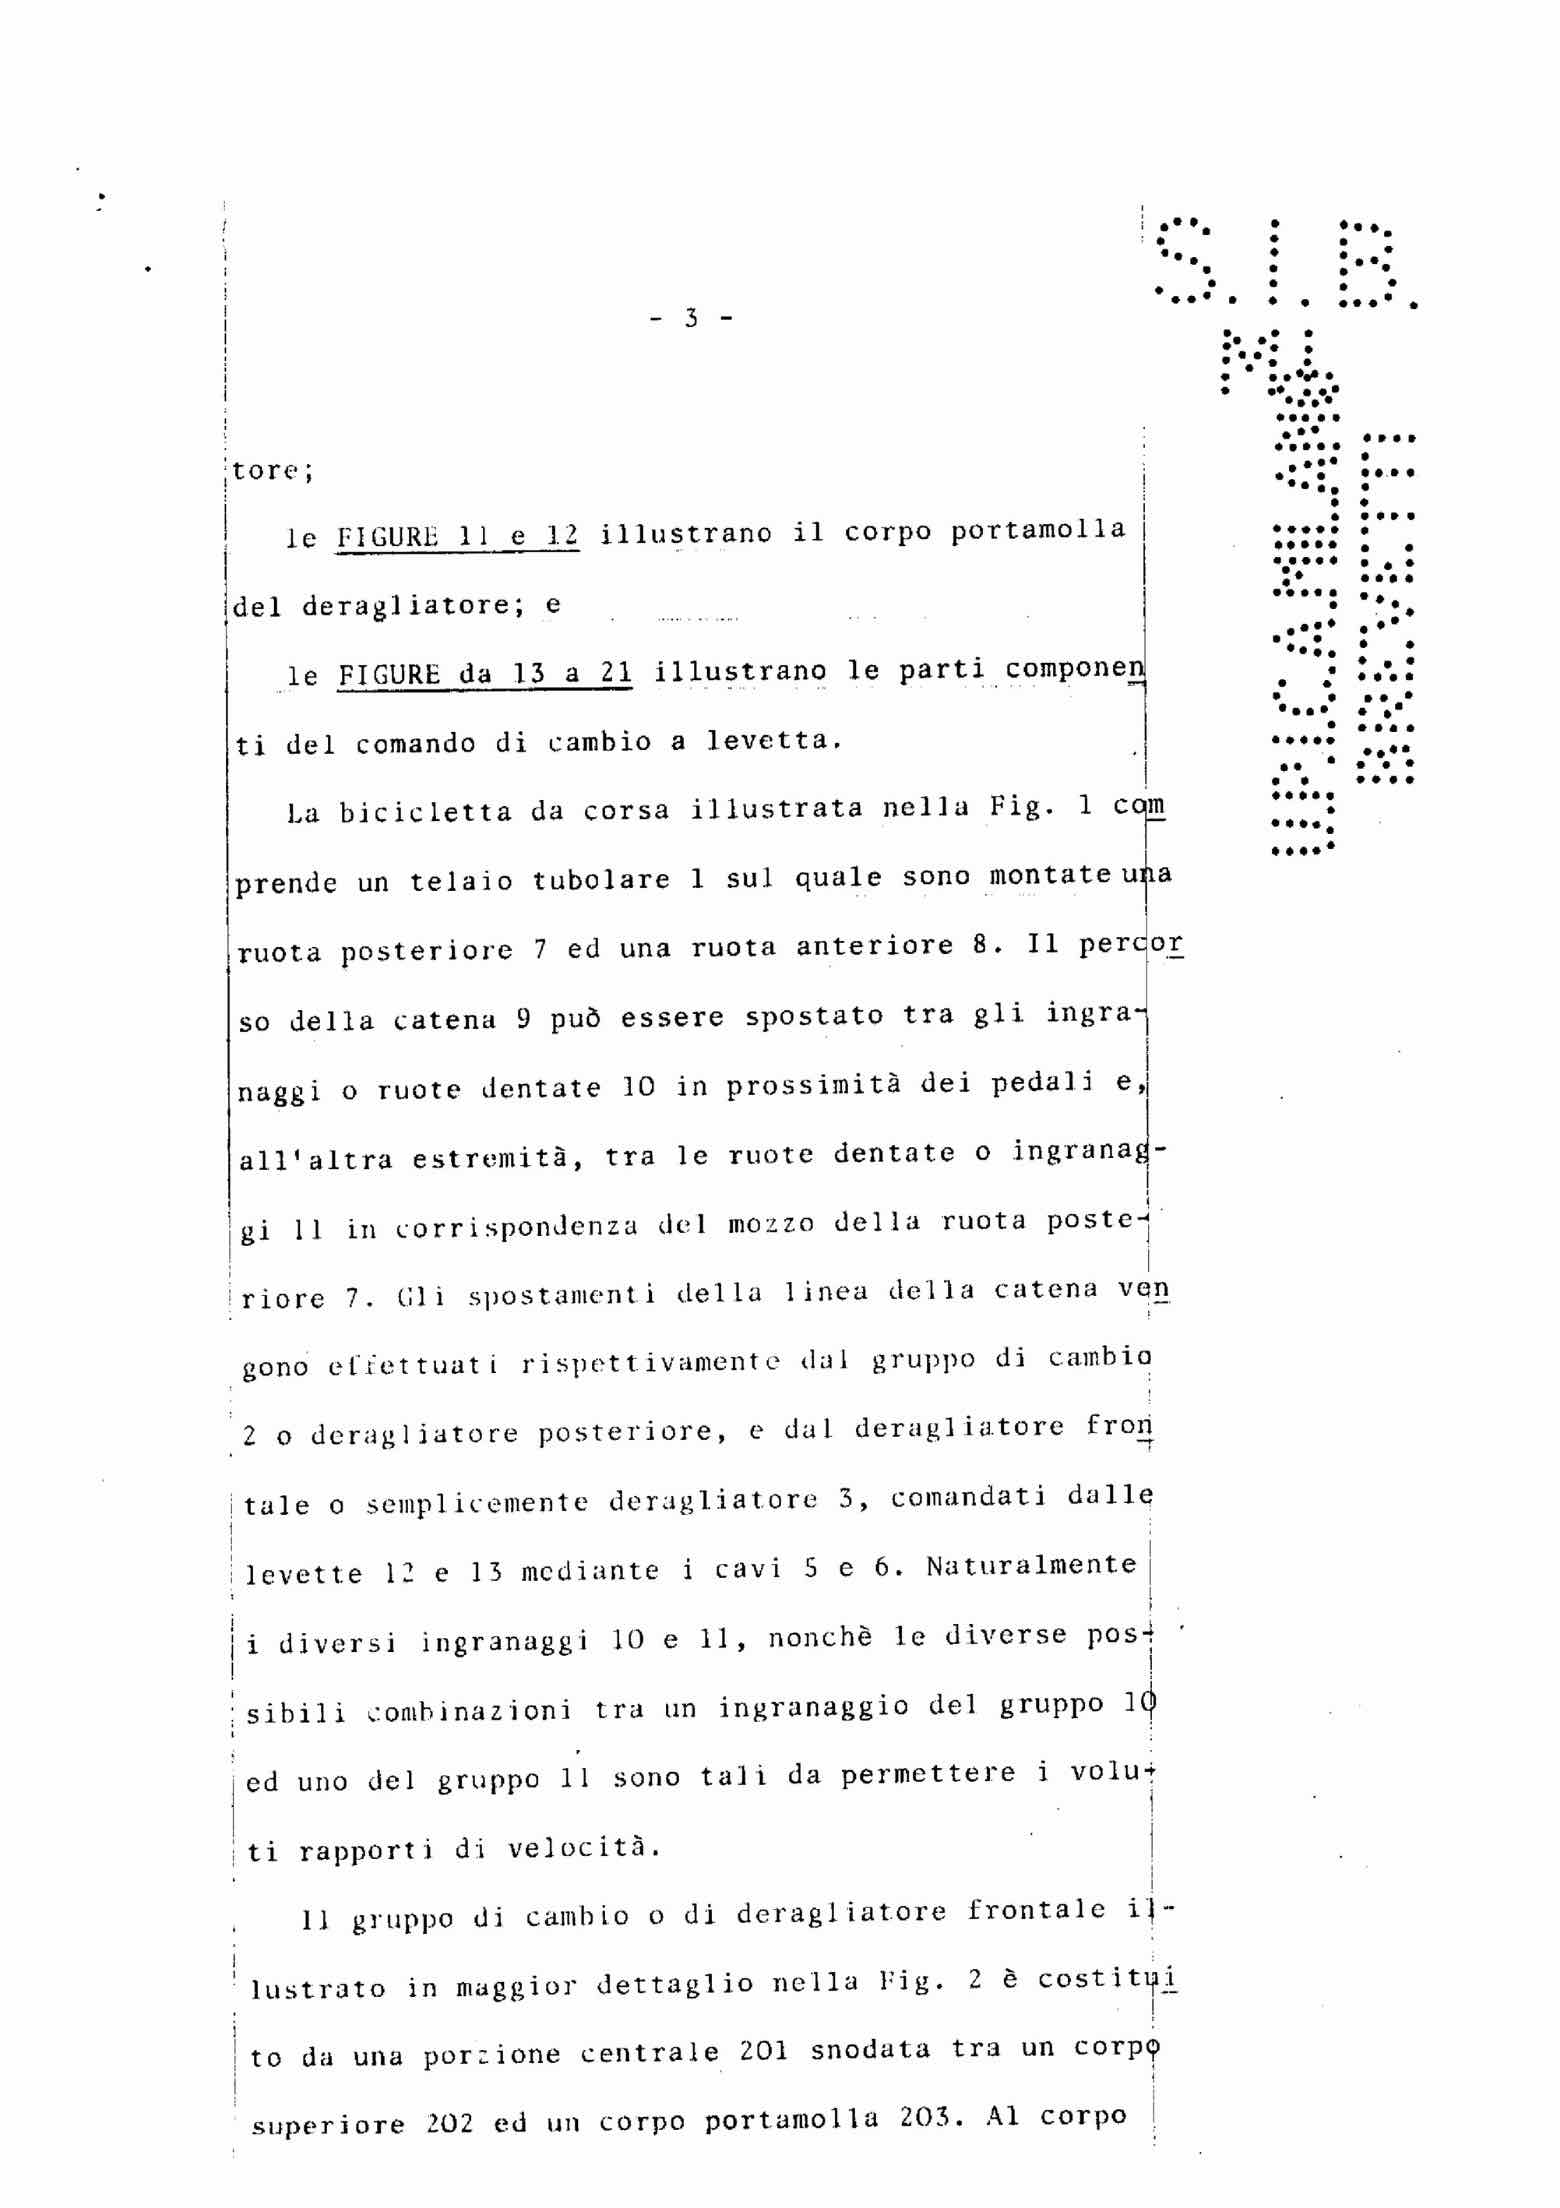 Italian Patent 1,123,752 - Rino scan 6 main image